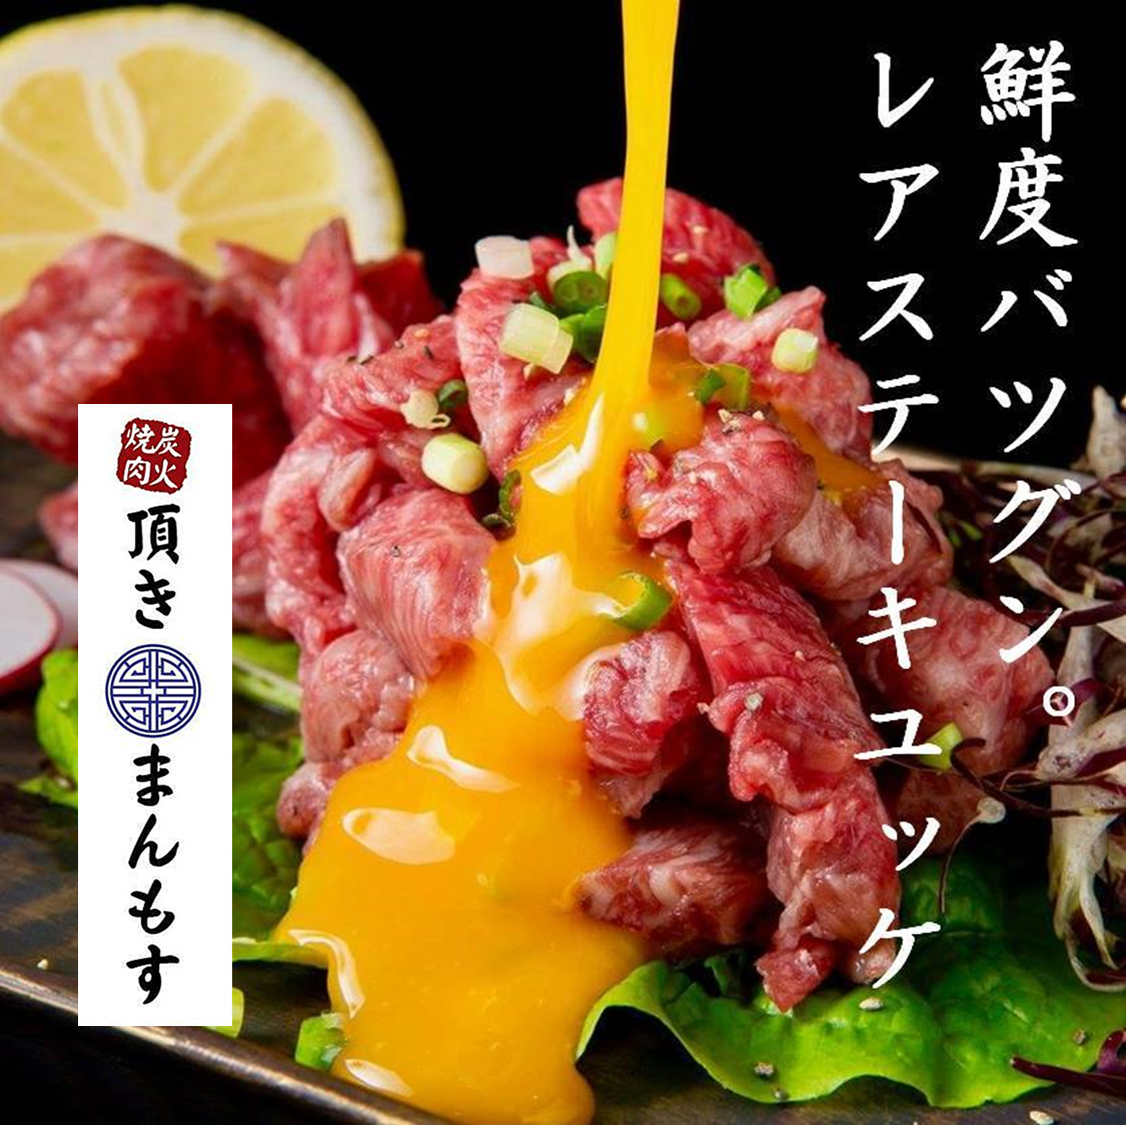 A5 랭크의 일본 흑소를 저렴하게 즐길 수있는 역 치카 가게 ☆ 고급 고기를 만끽하세요 ♪